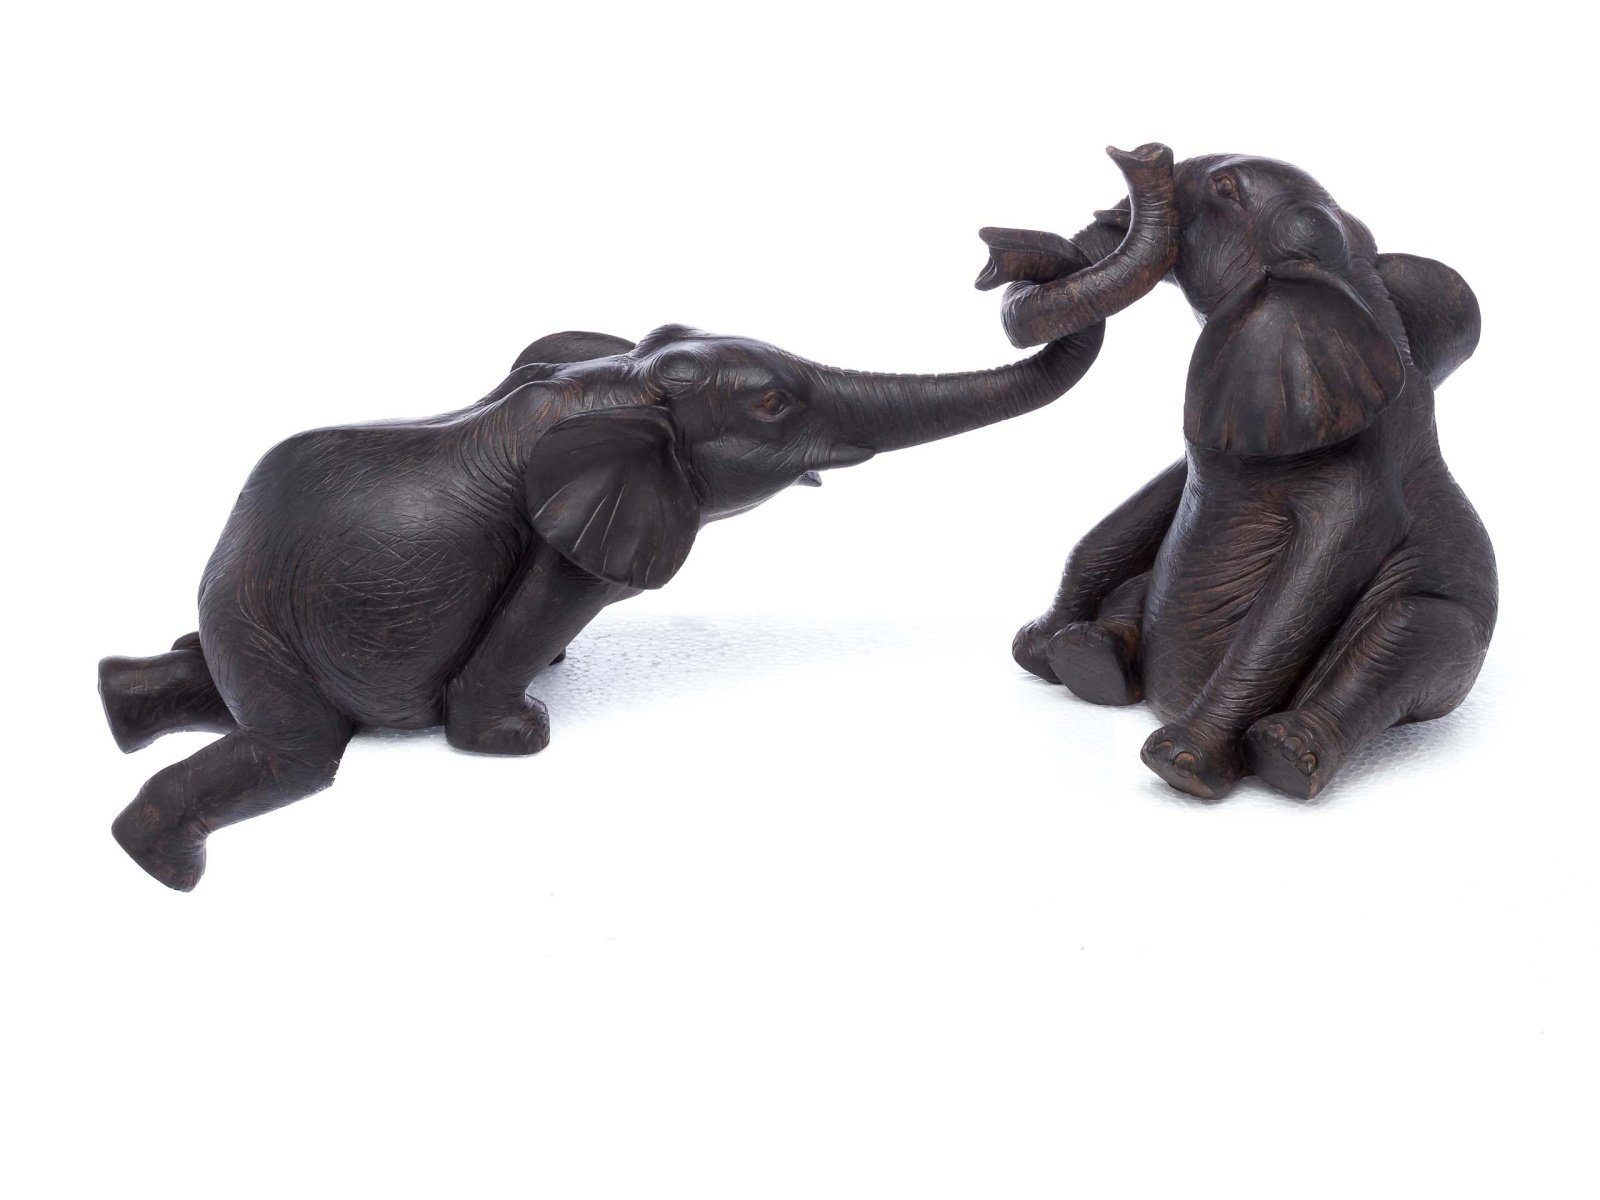 Aubaho Dekofigur Elefantenpaar aus elephant Skulptur Elefant Figur Kunstharz sculpture